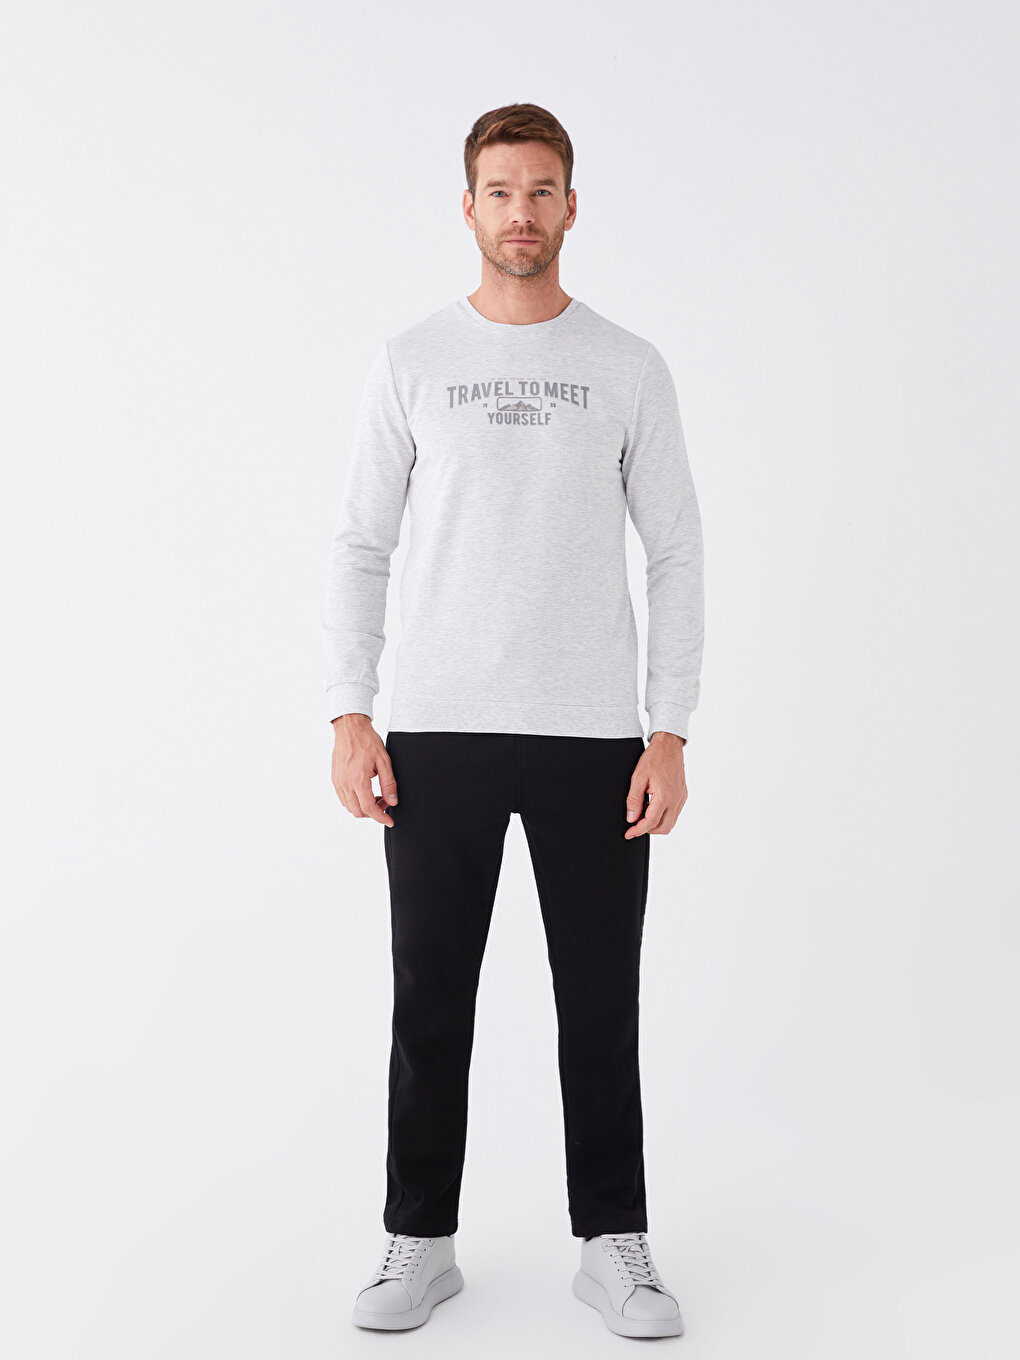 Crew Neck Long Sleeve Printed Men's Sweatshirt -S41779Z8-L8T 